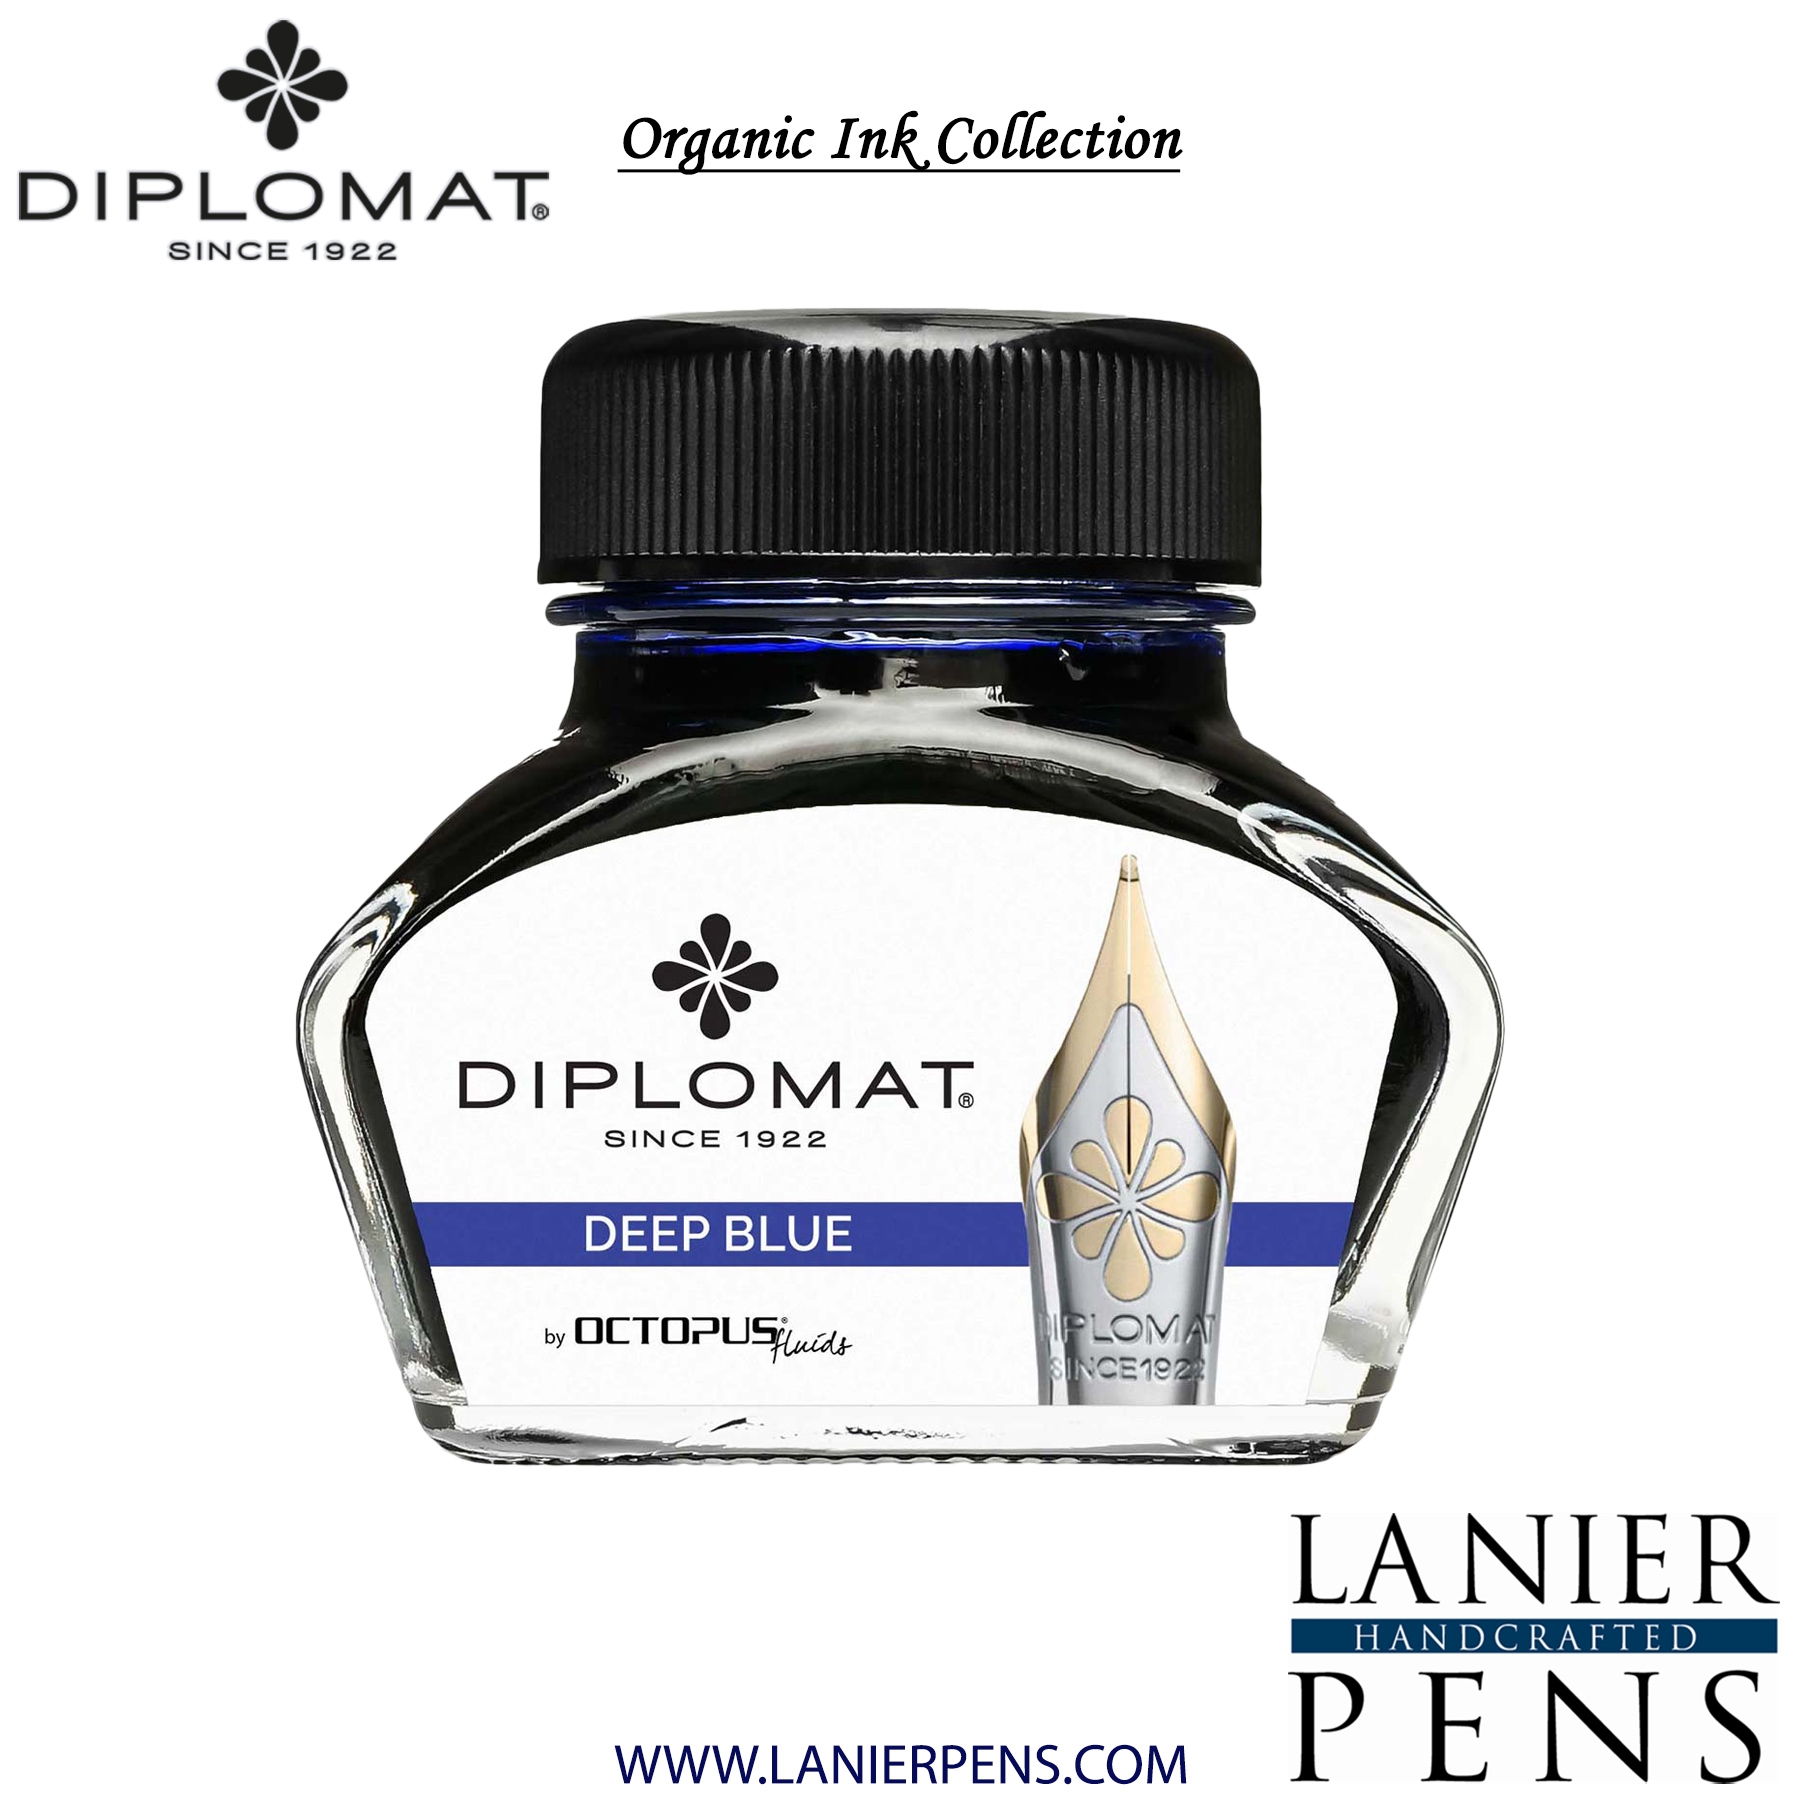 Diplomat Deep Blue Ink Bottle, 30ml by Lanier Pens, lanierpens, lanierpens.com, wndpens, WOOD N DREAMS, Pensbylanier